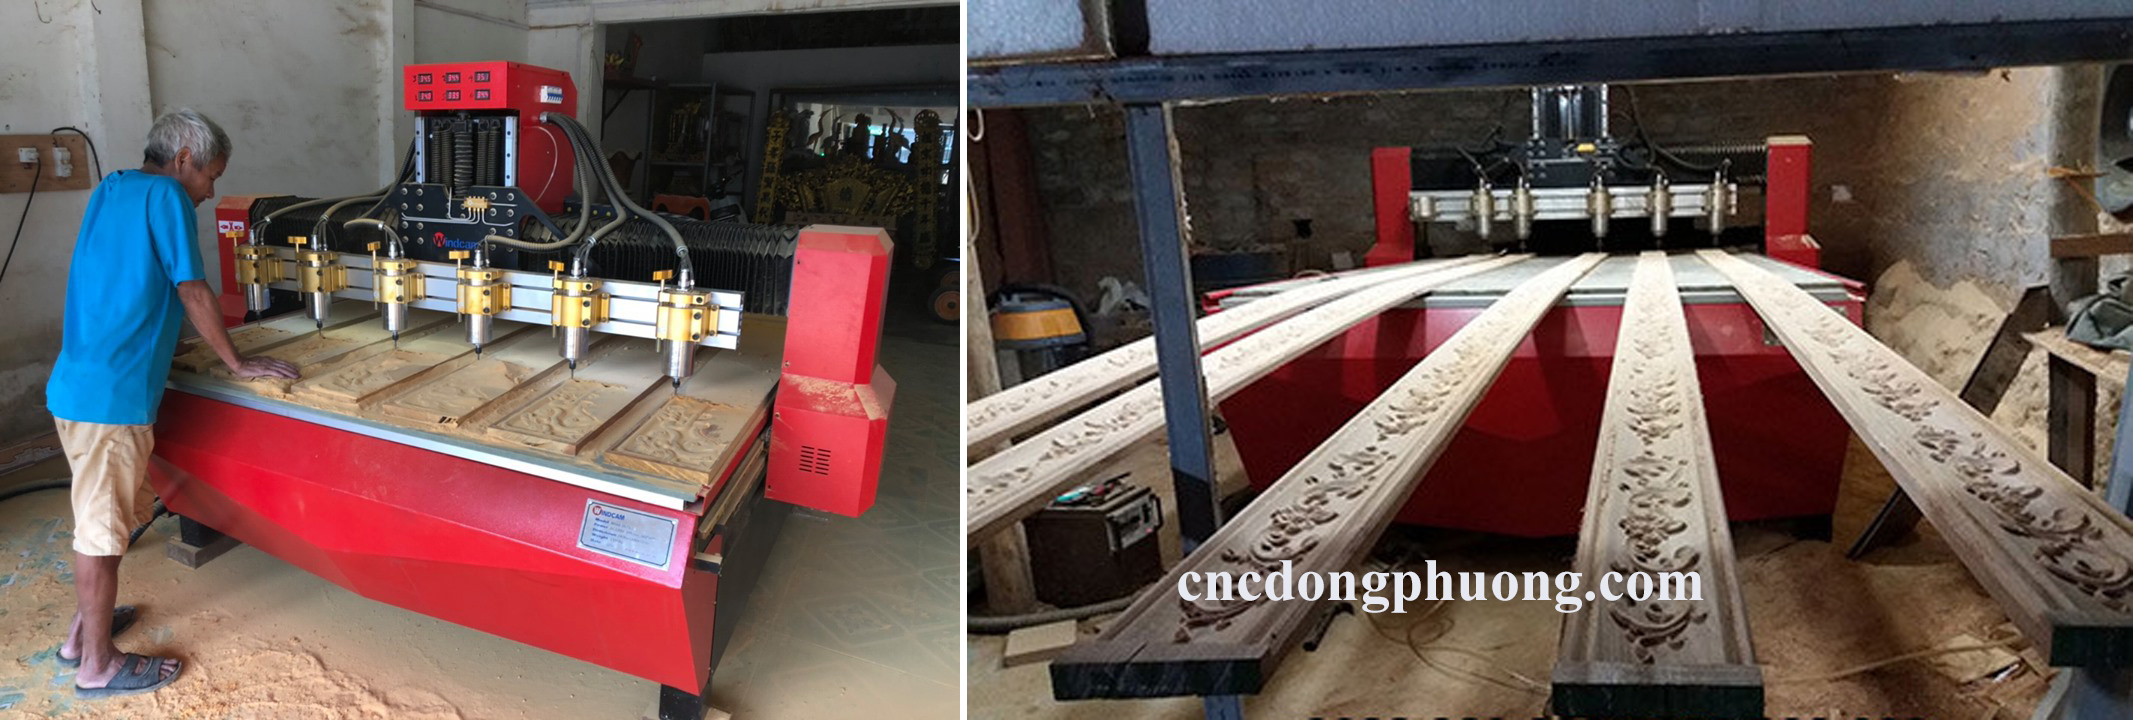 ĐÃ TÌM RA chiếc máy đục cnc gỗ bán chạy nhất tại ĐÔNG PHƯƠNG3